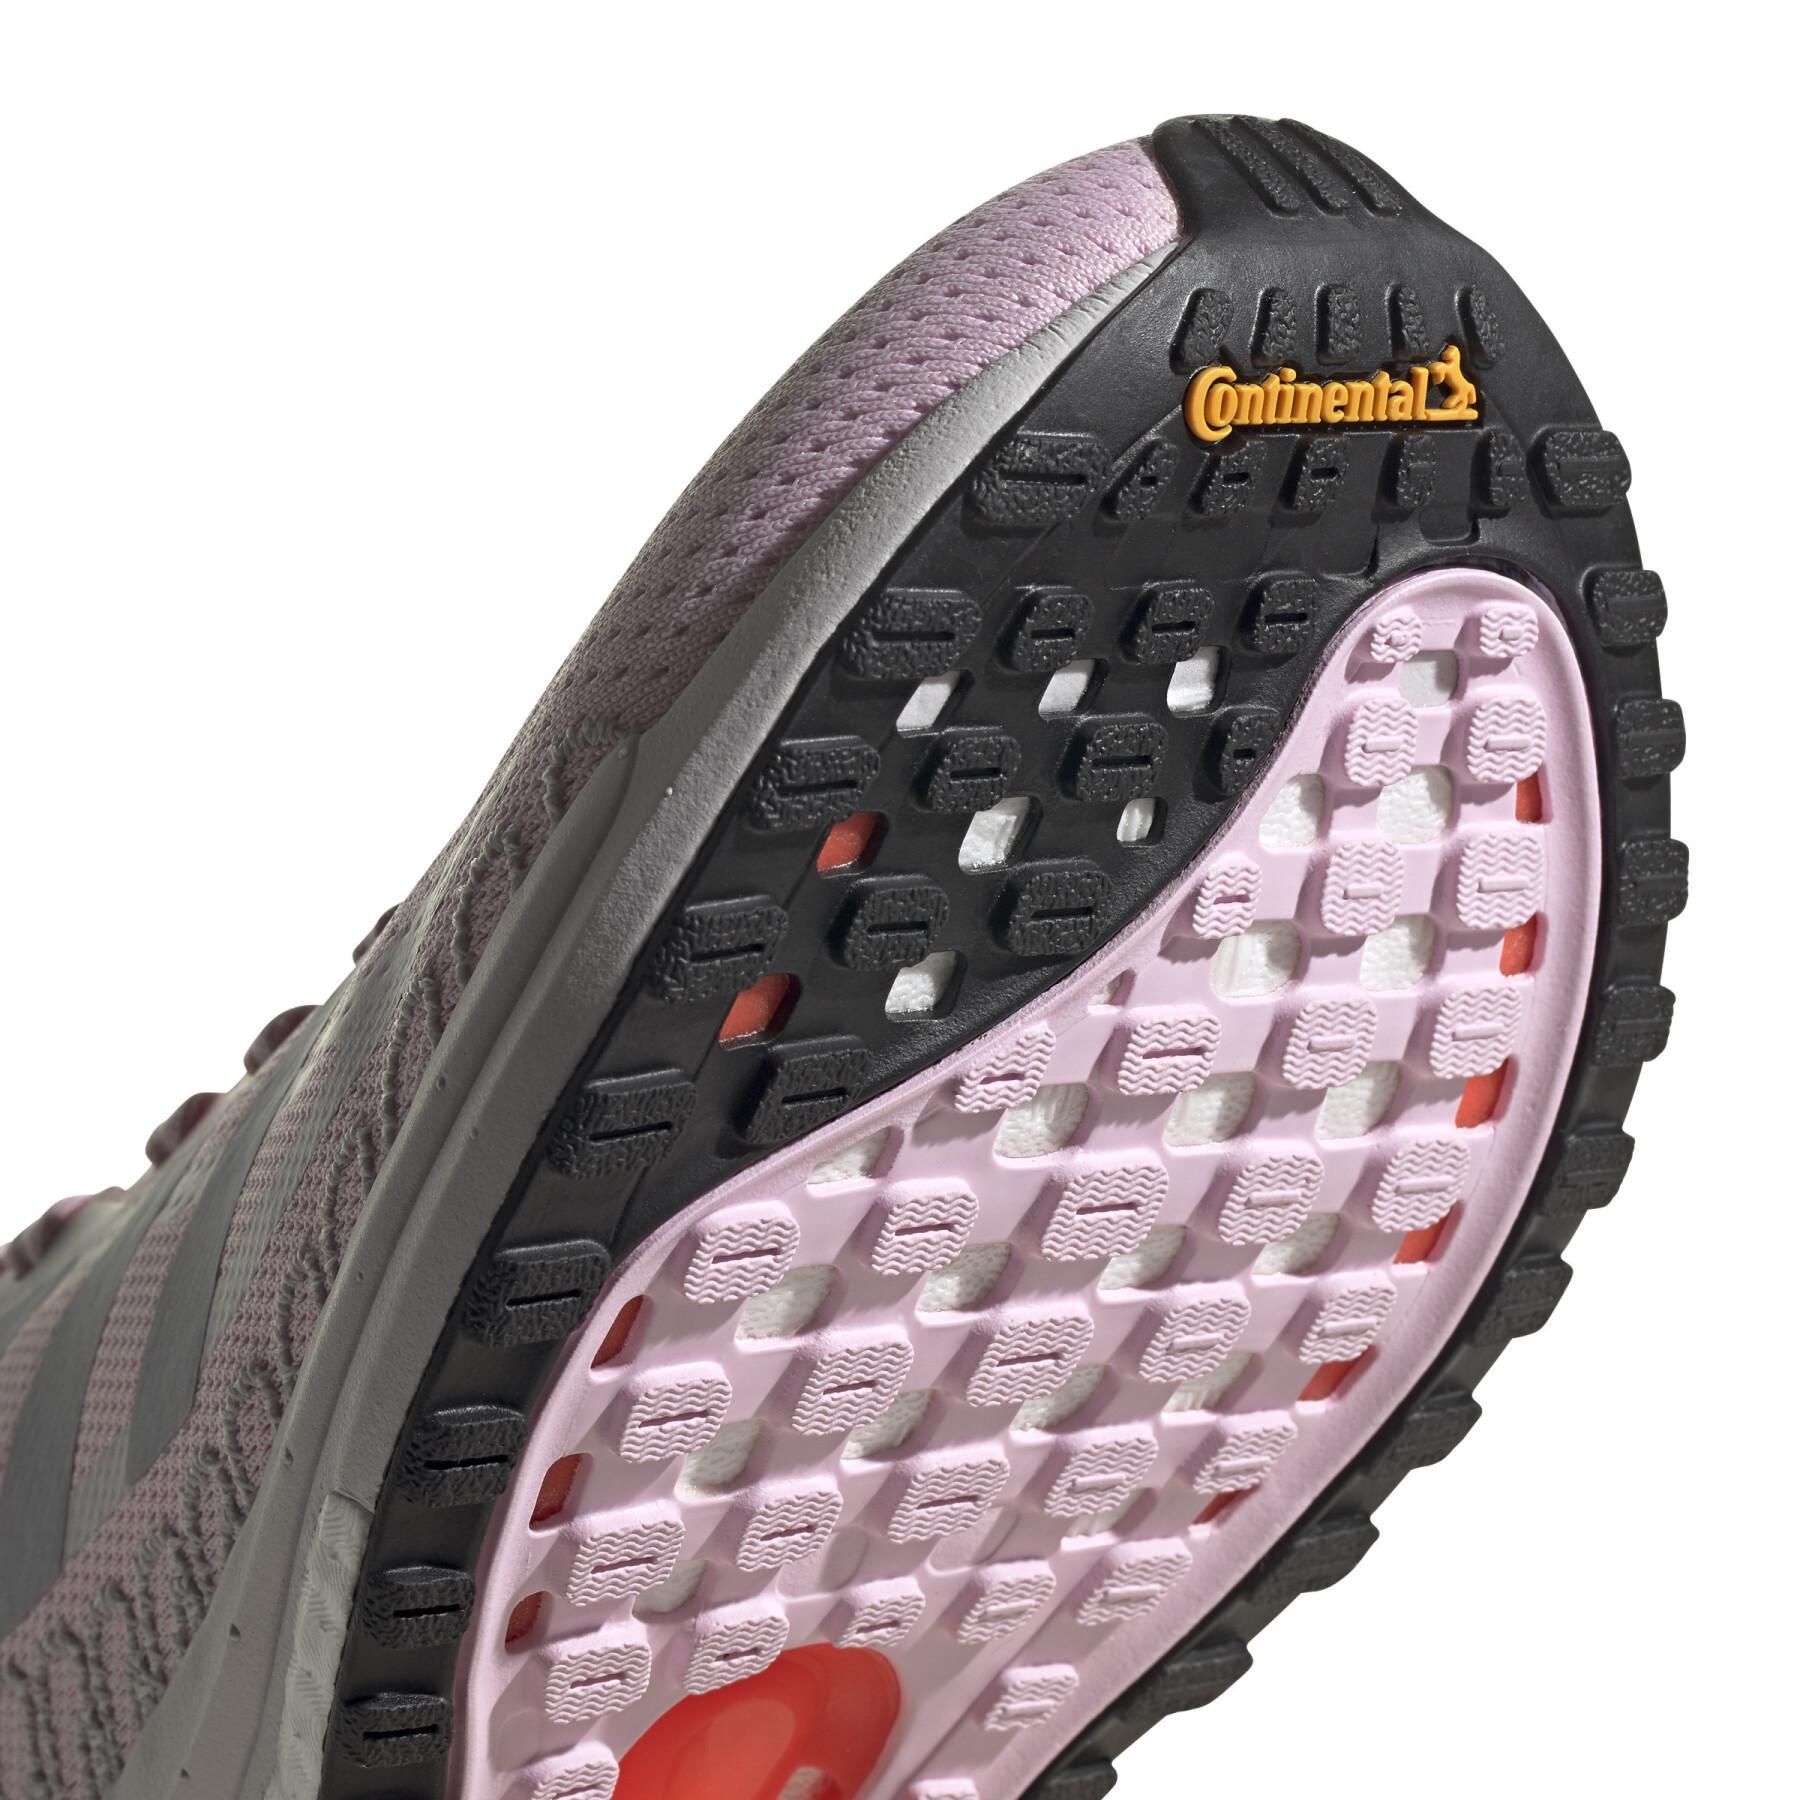 Zapatillas de running para mujer adidas SolarGlide ST